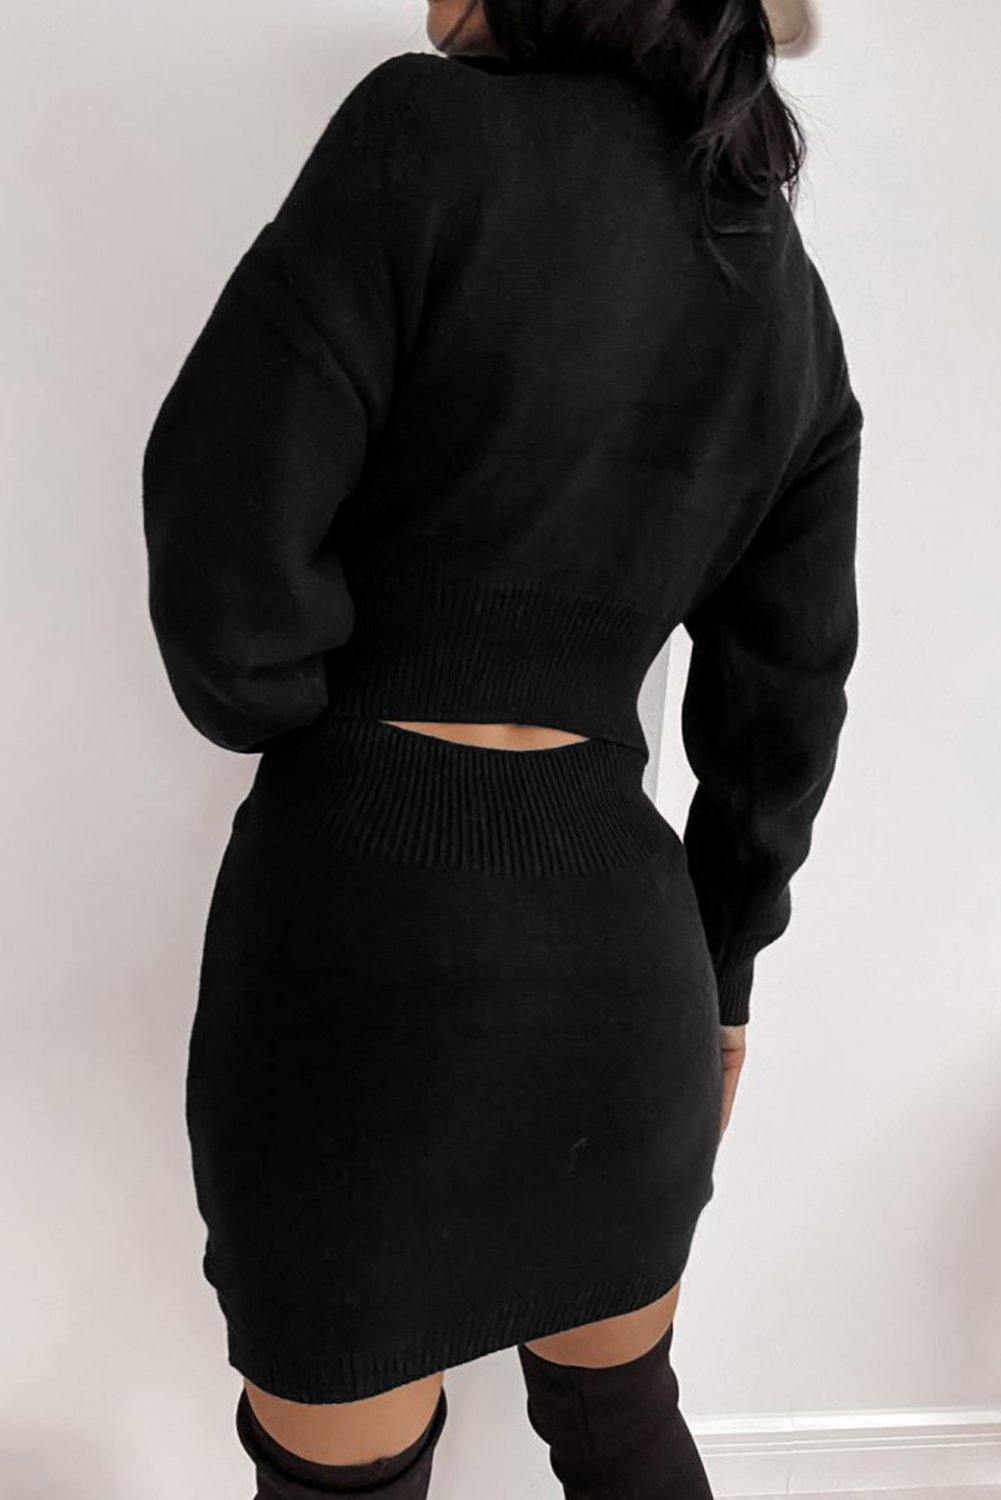 Geometric Texture Bodycon Sweater Dress - L & M Kee, LLC